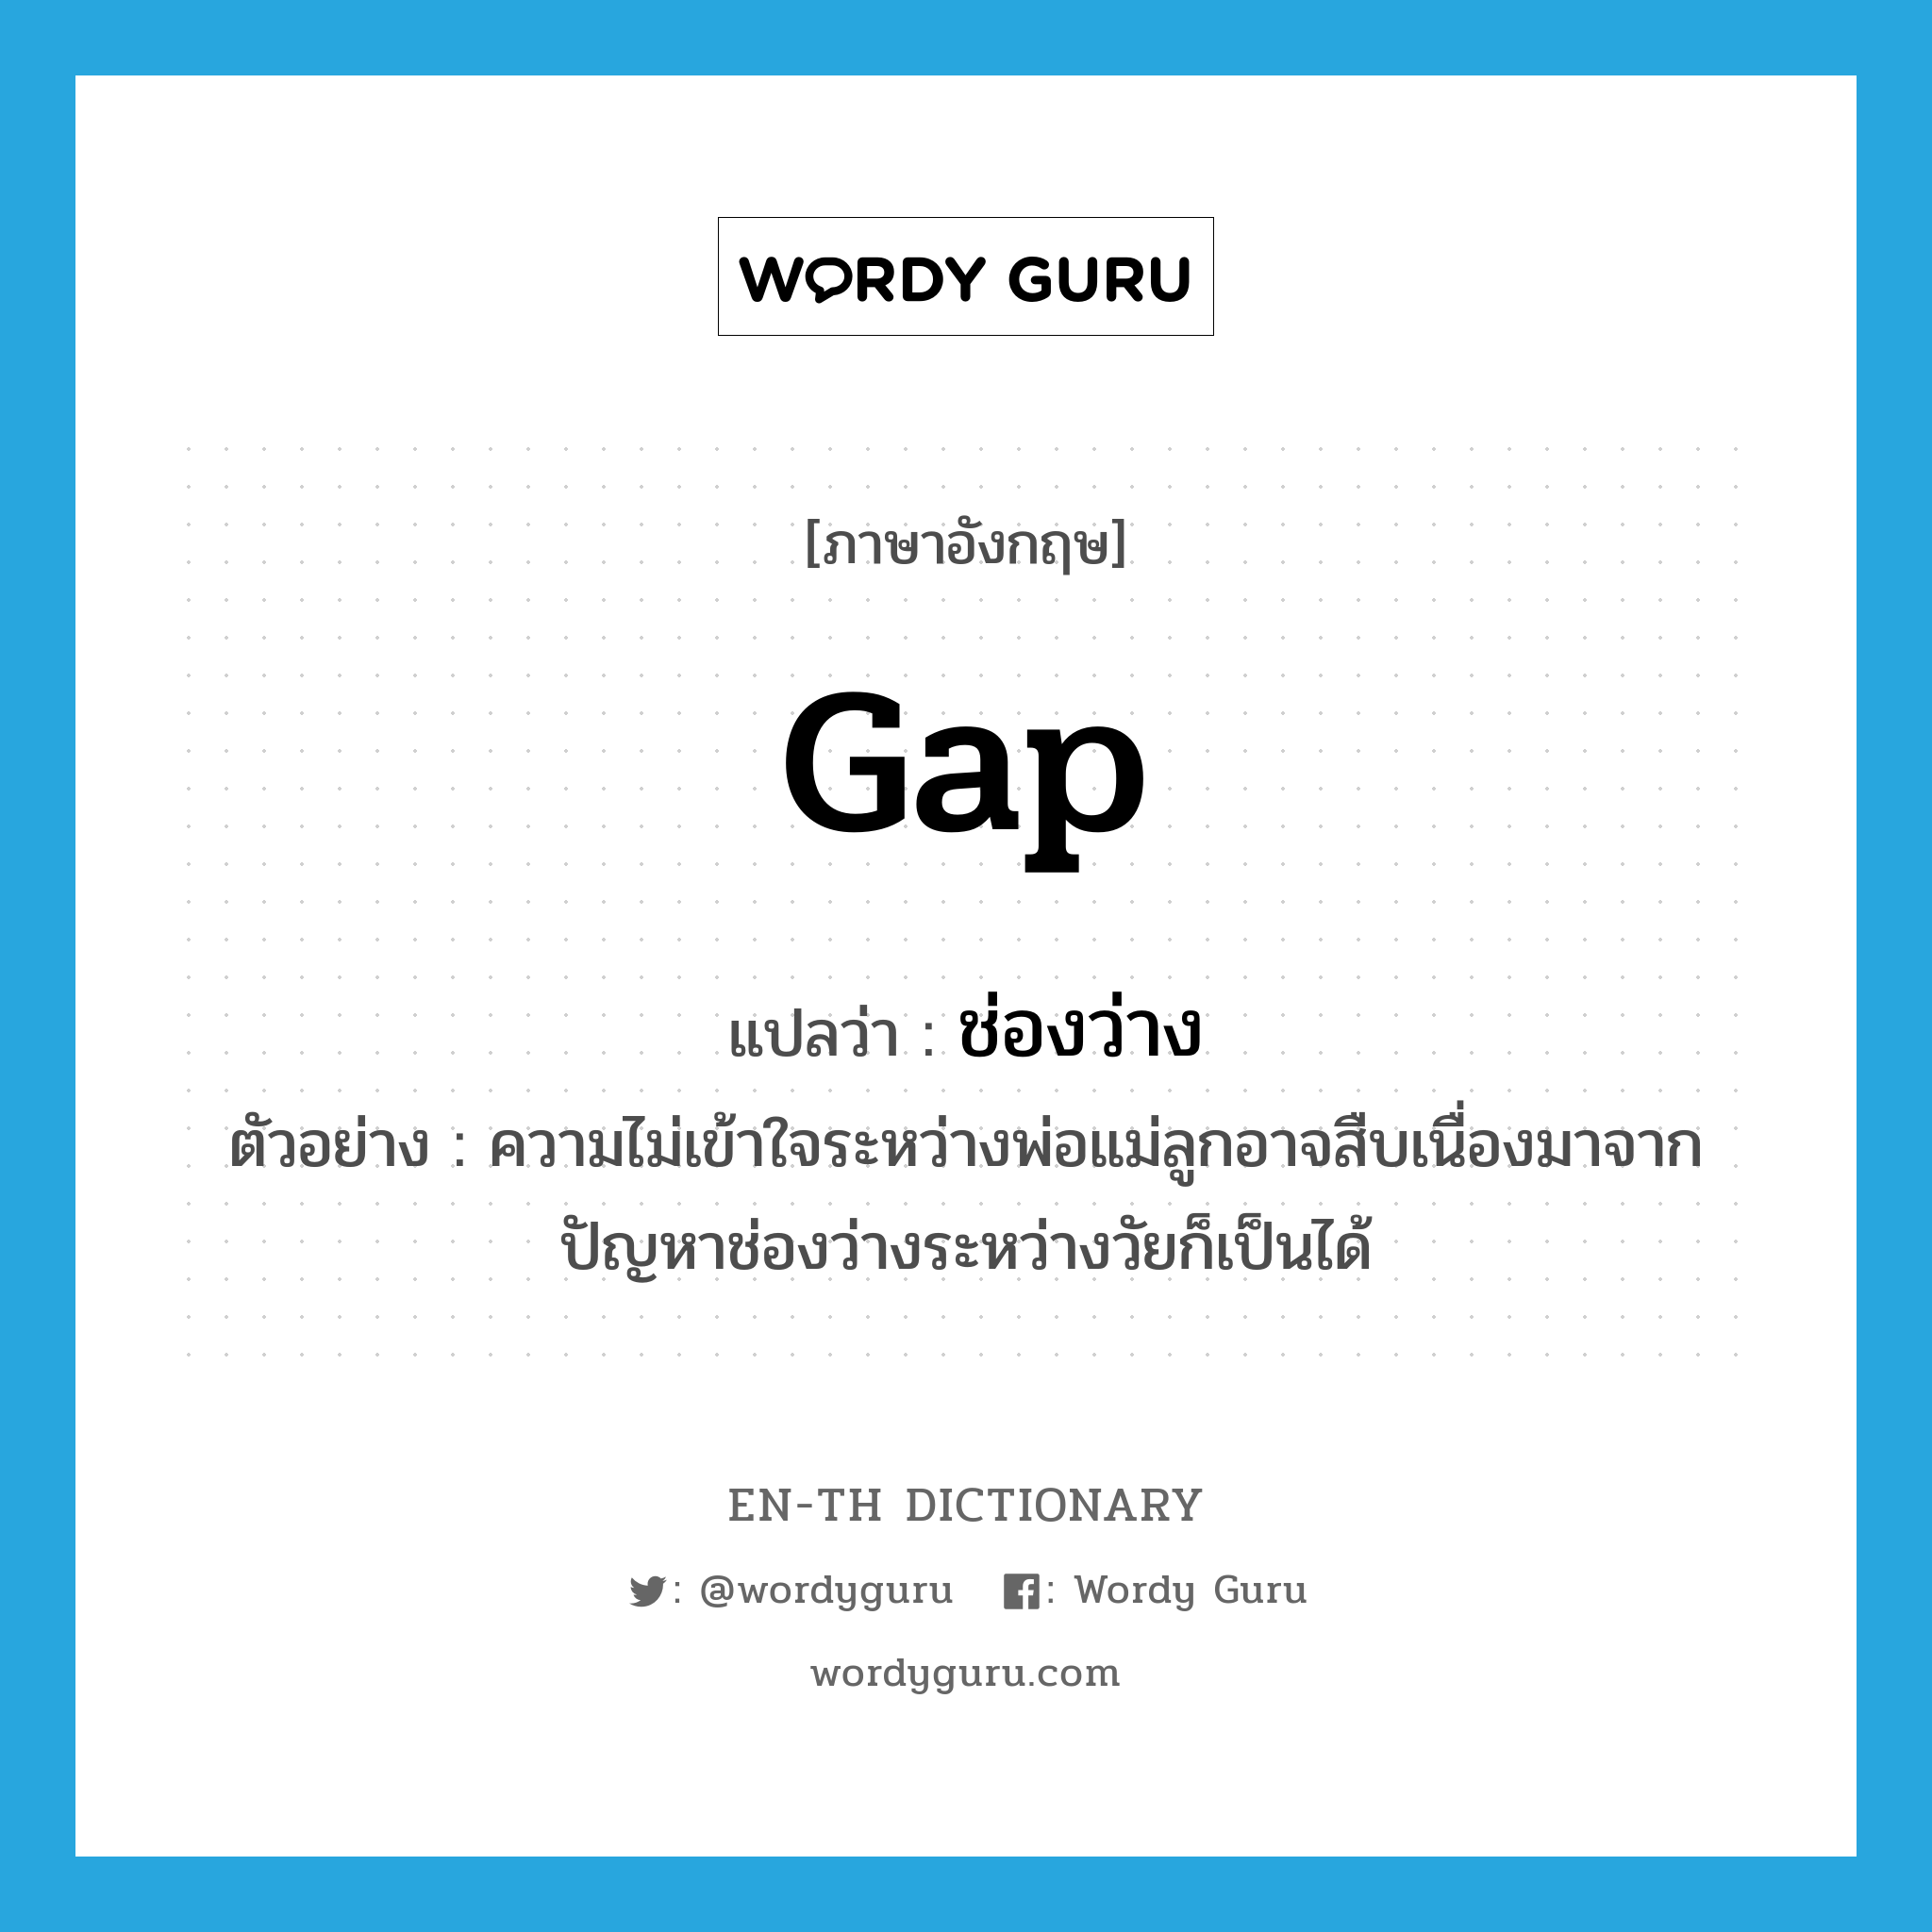 gap แปลว่า?, คำศัพท์ภาษาอังกฤษ gap แปลว่า ช่องว่าง ประเภท N ตัวอย่าง ความไม่เข้าใจระหว่างพ่อแม่ลูกอาจสืบเนื่องมาจากปัญหาช่องว่างระหว่างวัยก็เป็นได้ หมวด N